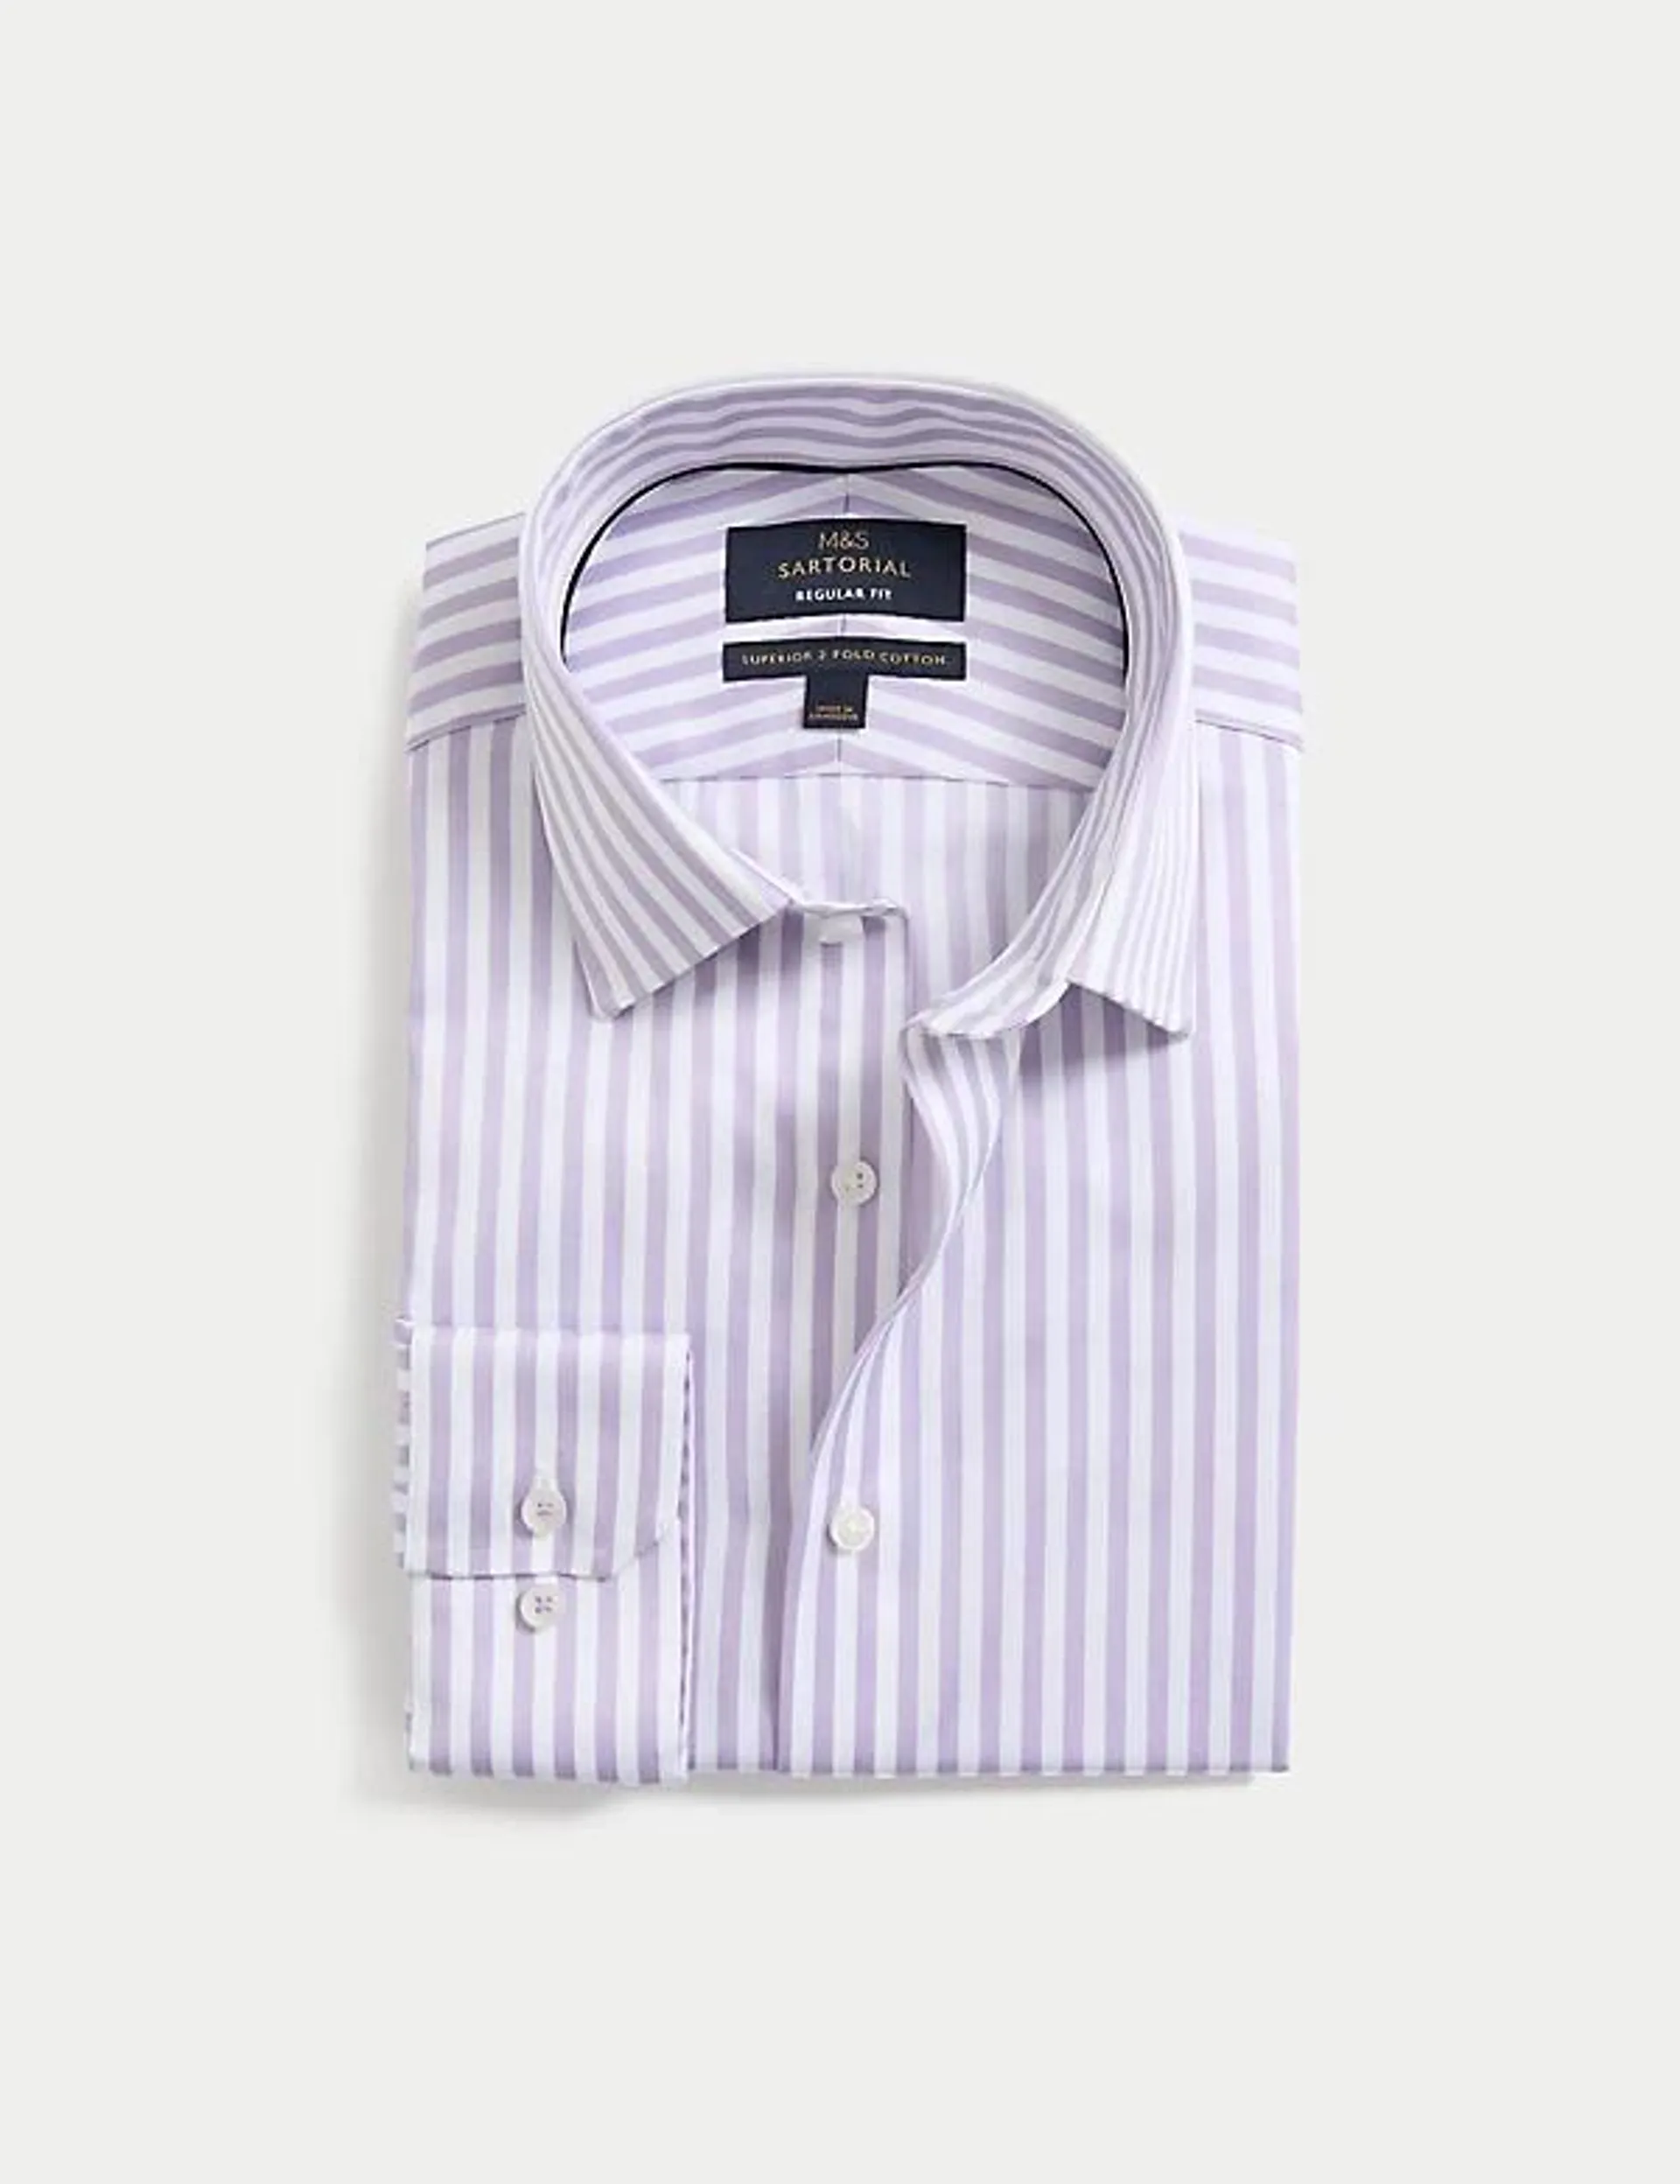 Košile klasického střihu z luxusní bavlny, se širokým proužkem, snadné žehlení